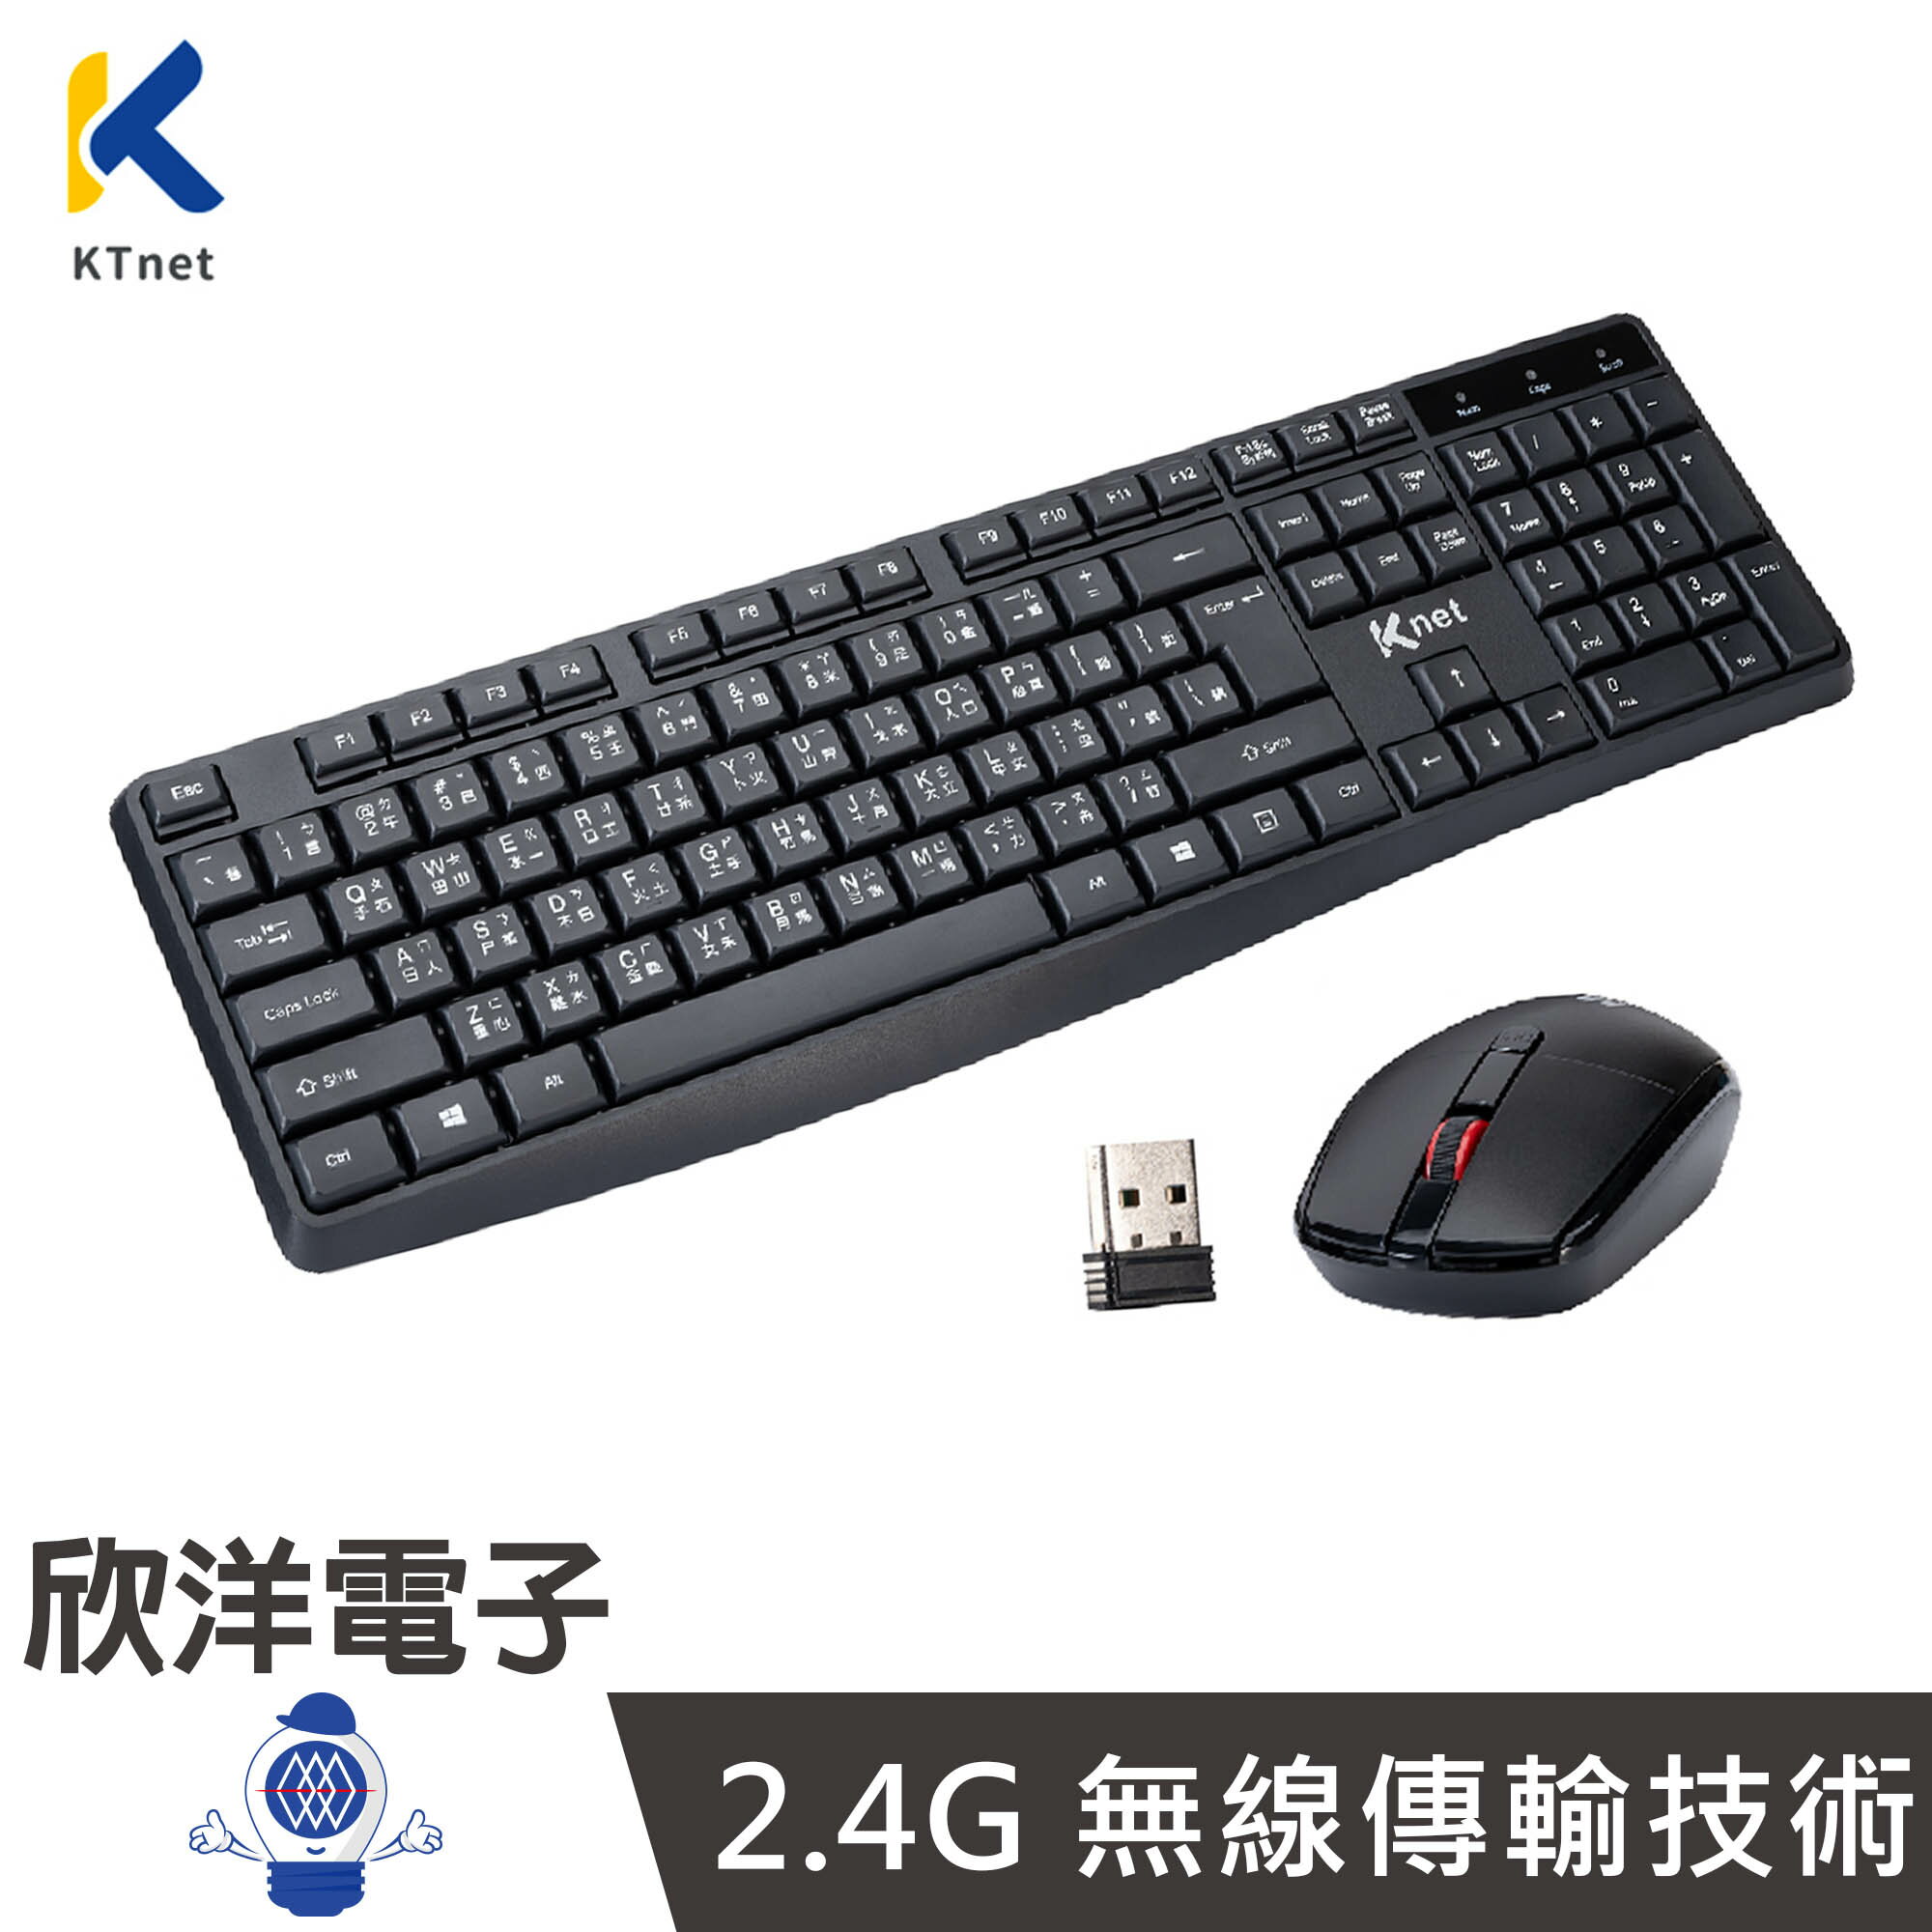 ※ 欣洋電子 ※ KTNET 廣鐸 2.4G Z7無線鍵盤滑鼠組 鍵鼠組 經典款 (KTKMRF7000) 1年保固 電腦 筆電 USB 隨身碟